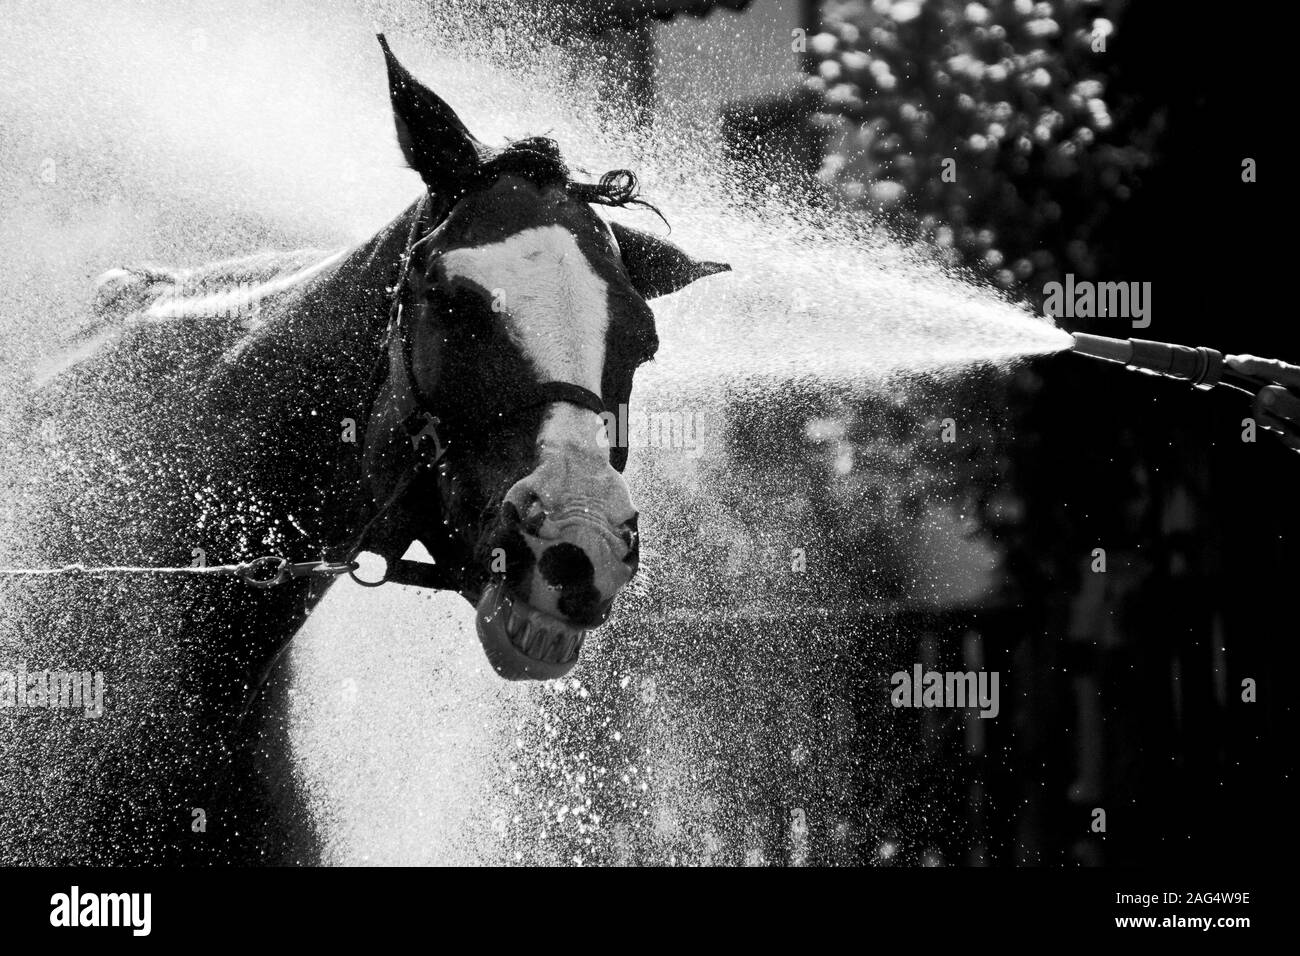 Immagine in scala di grigi di un cavallo di Stallion sorridente mentre si gode spruzzi d'acqua freschi Foto Stock